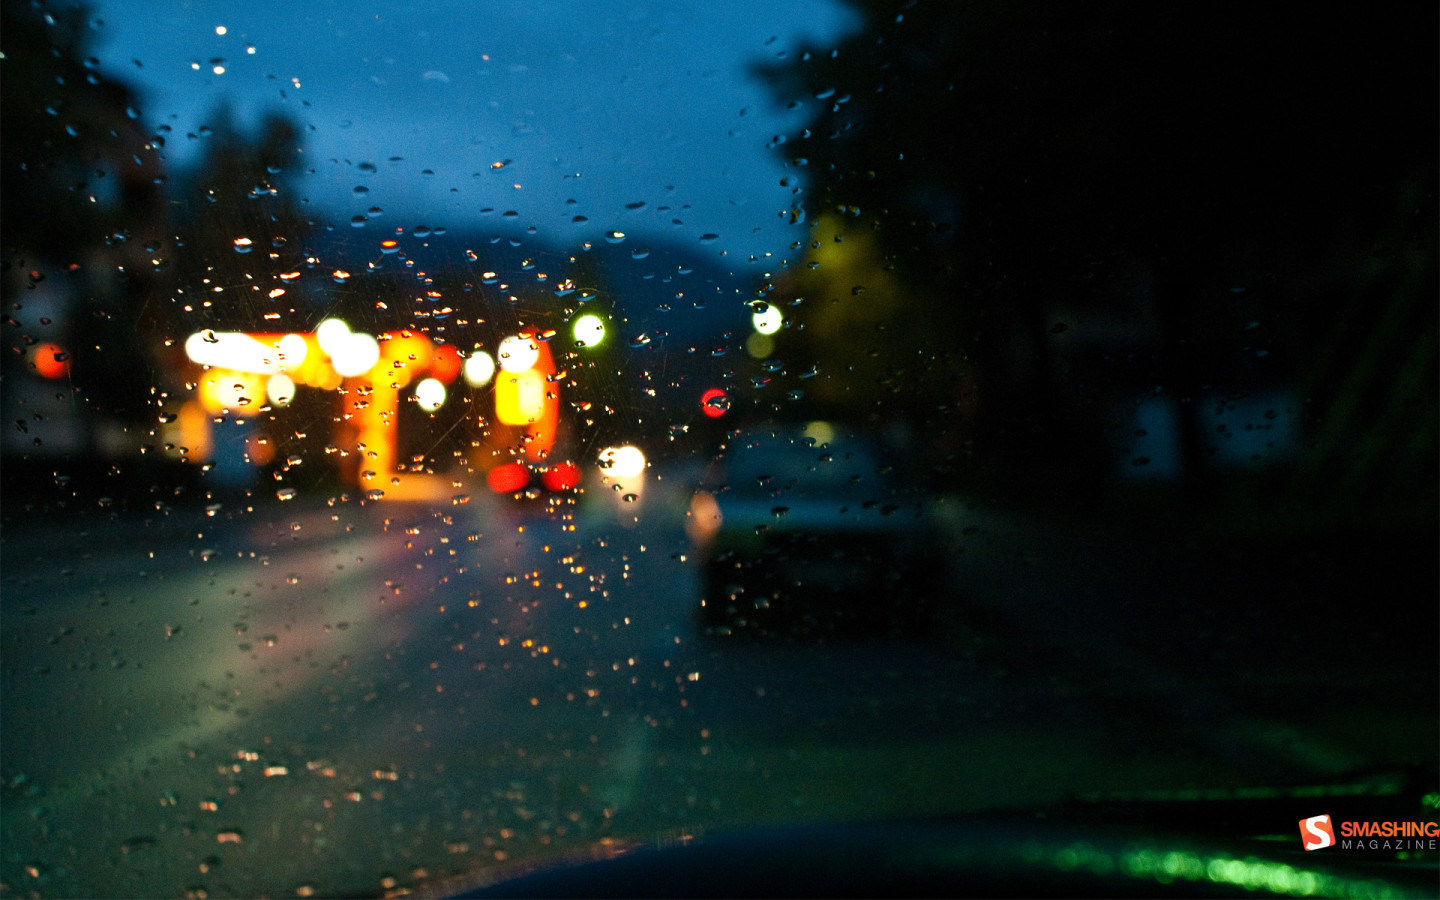 The rain windshield